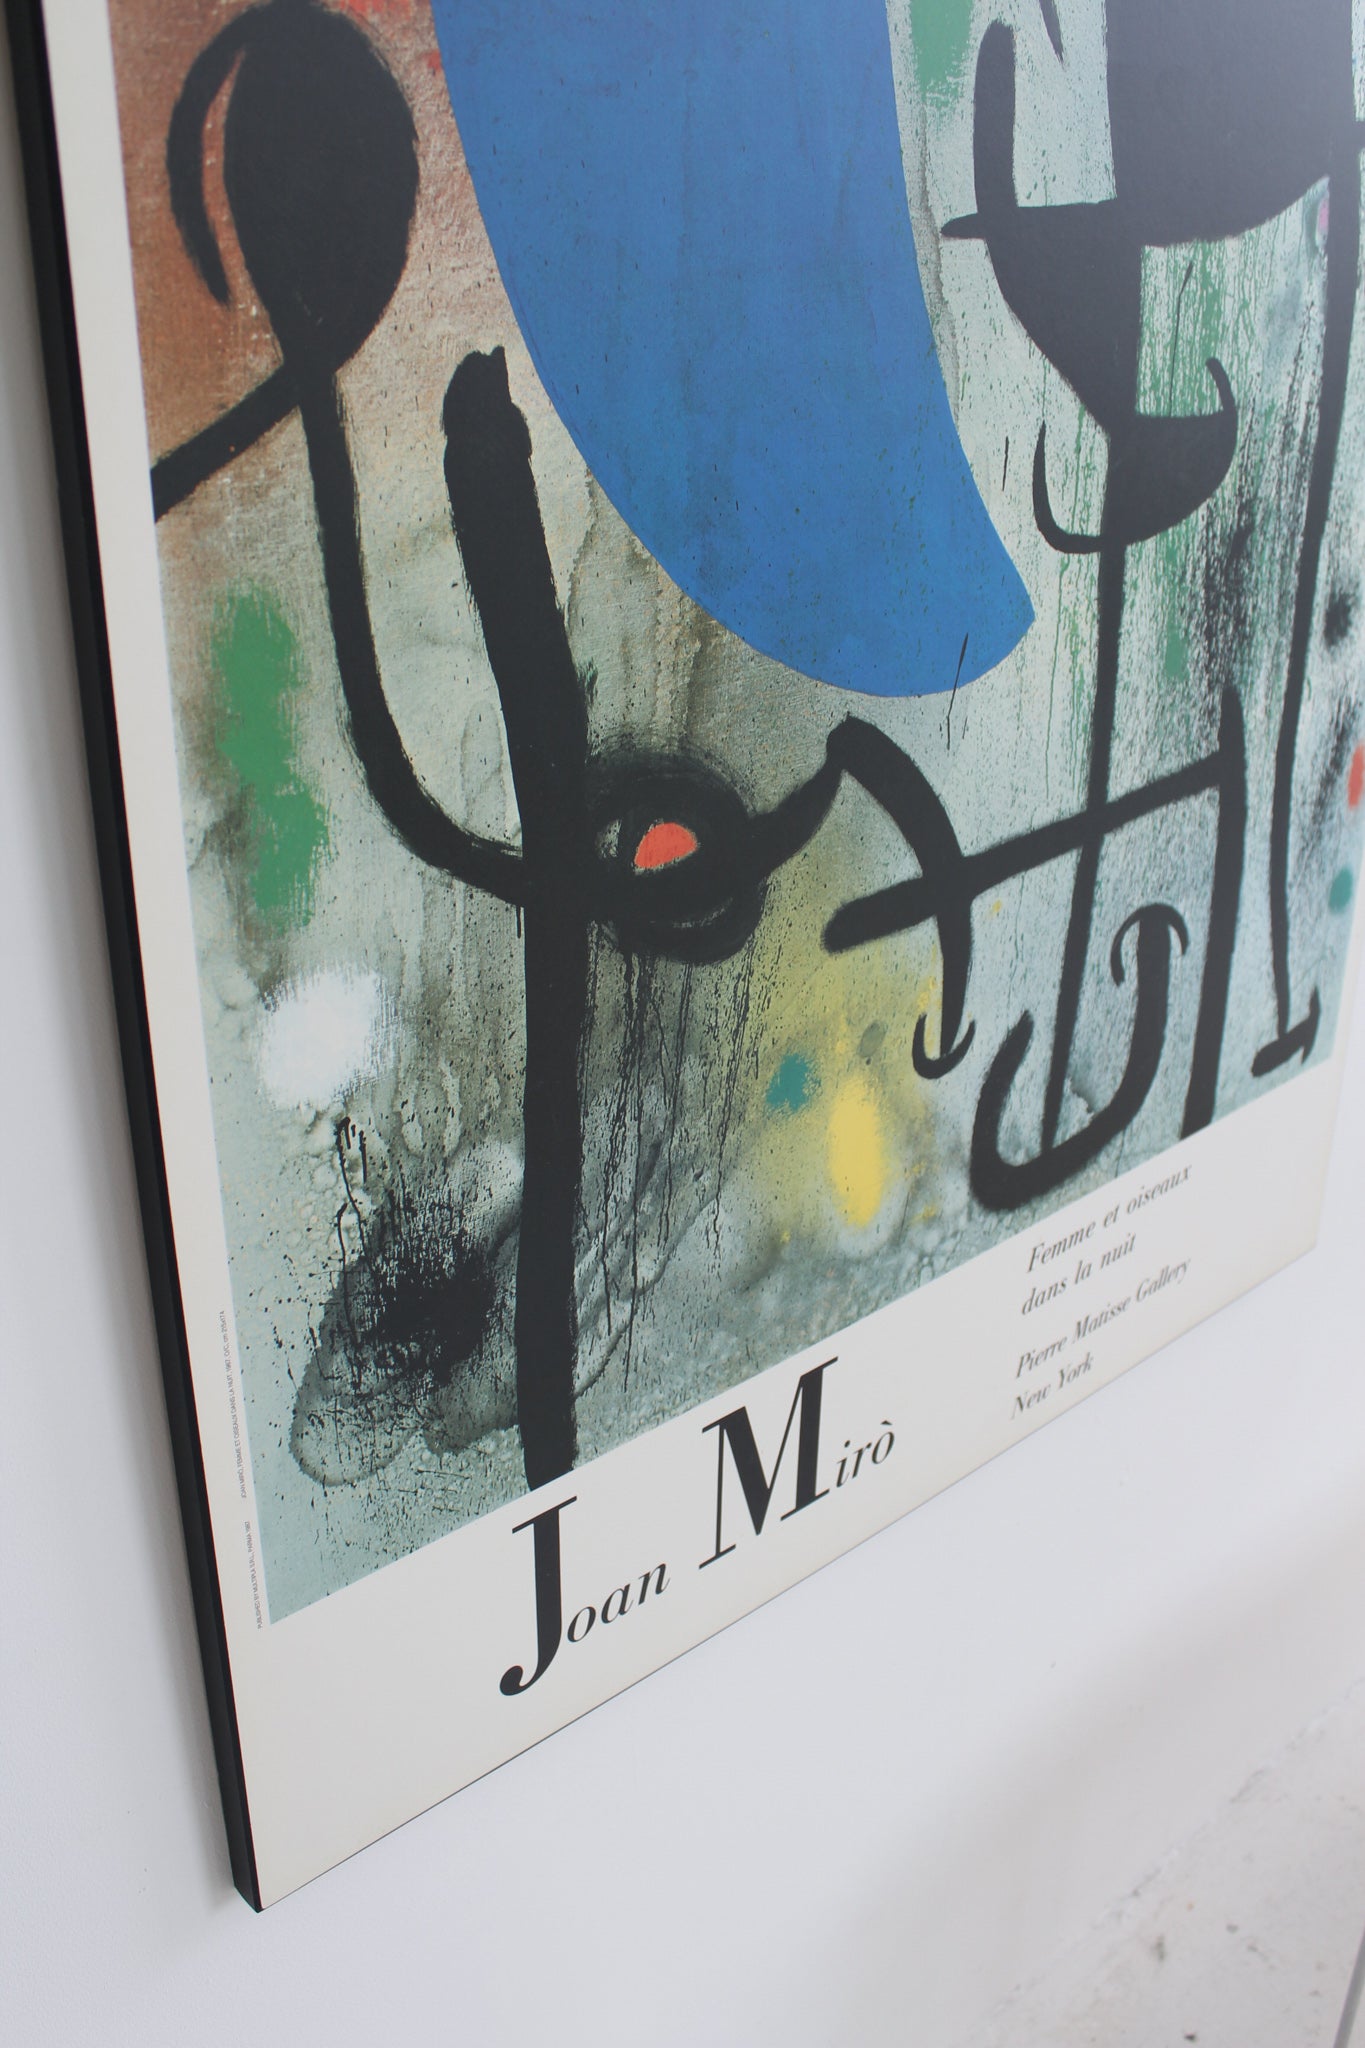 "Femme et Oiseaux dans la Nuit" by Joan Miró Laminated Print